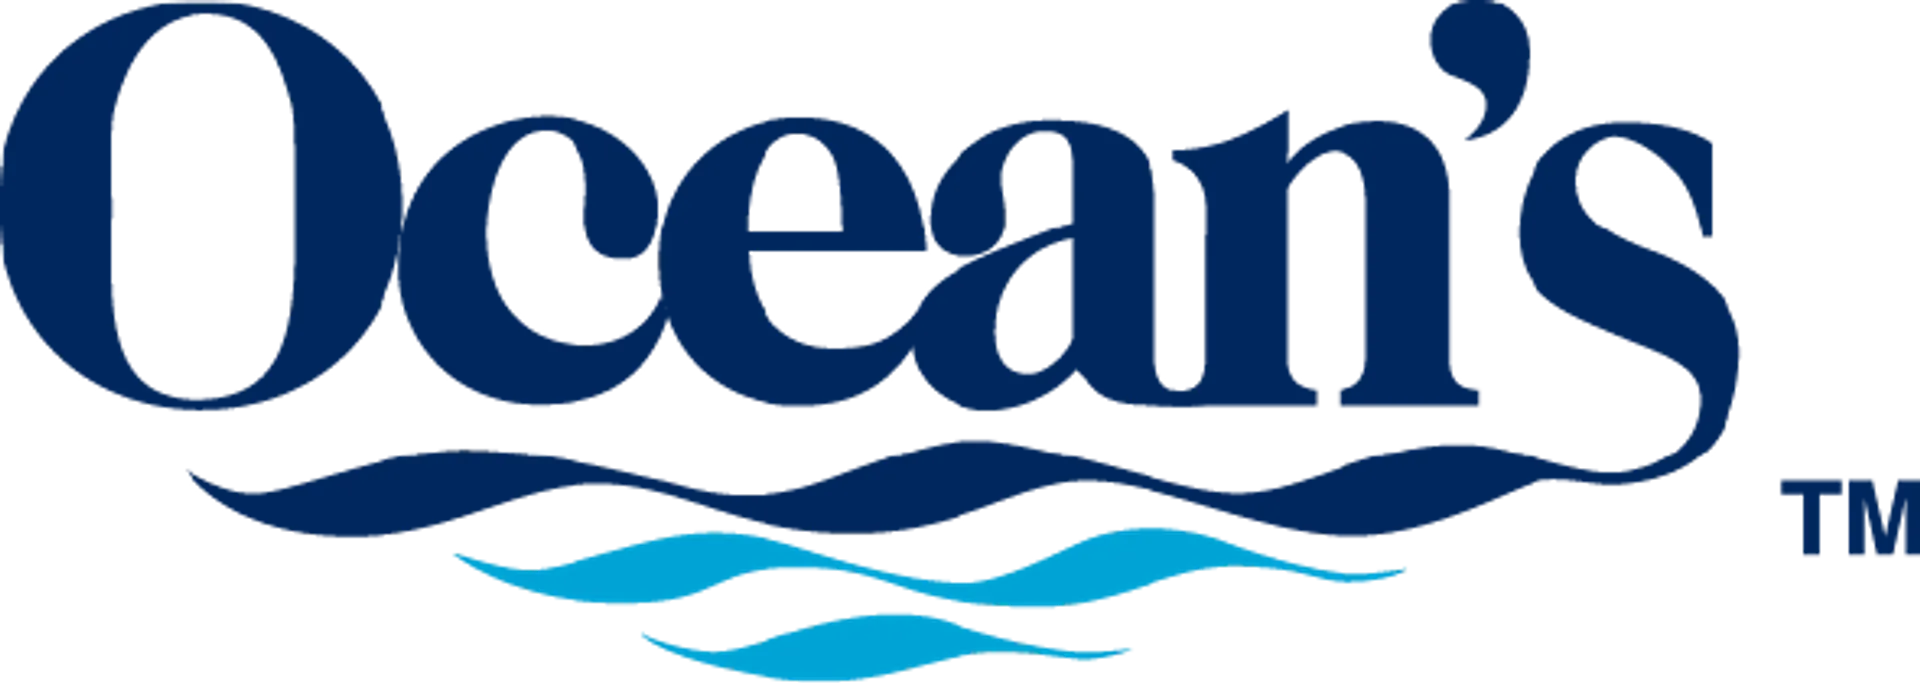 OCEANS logo